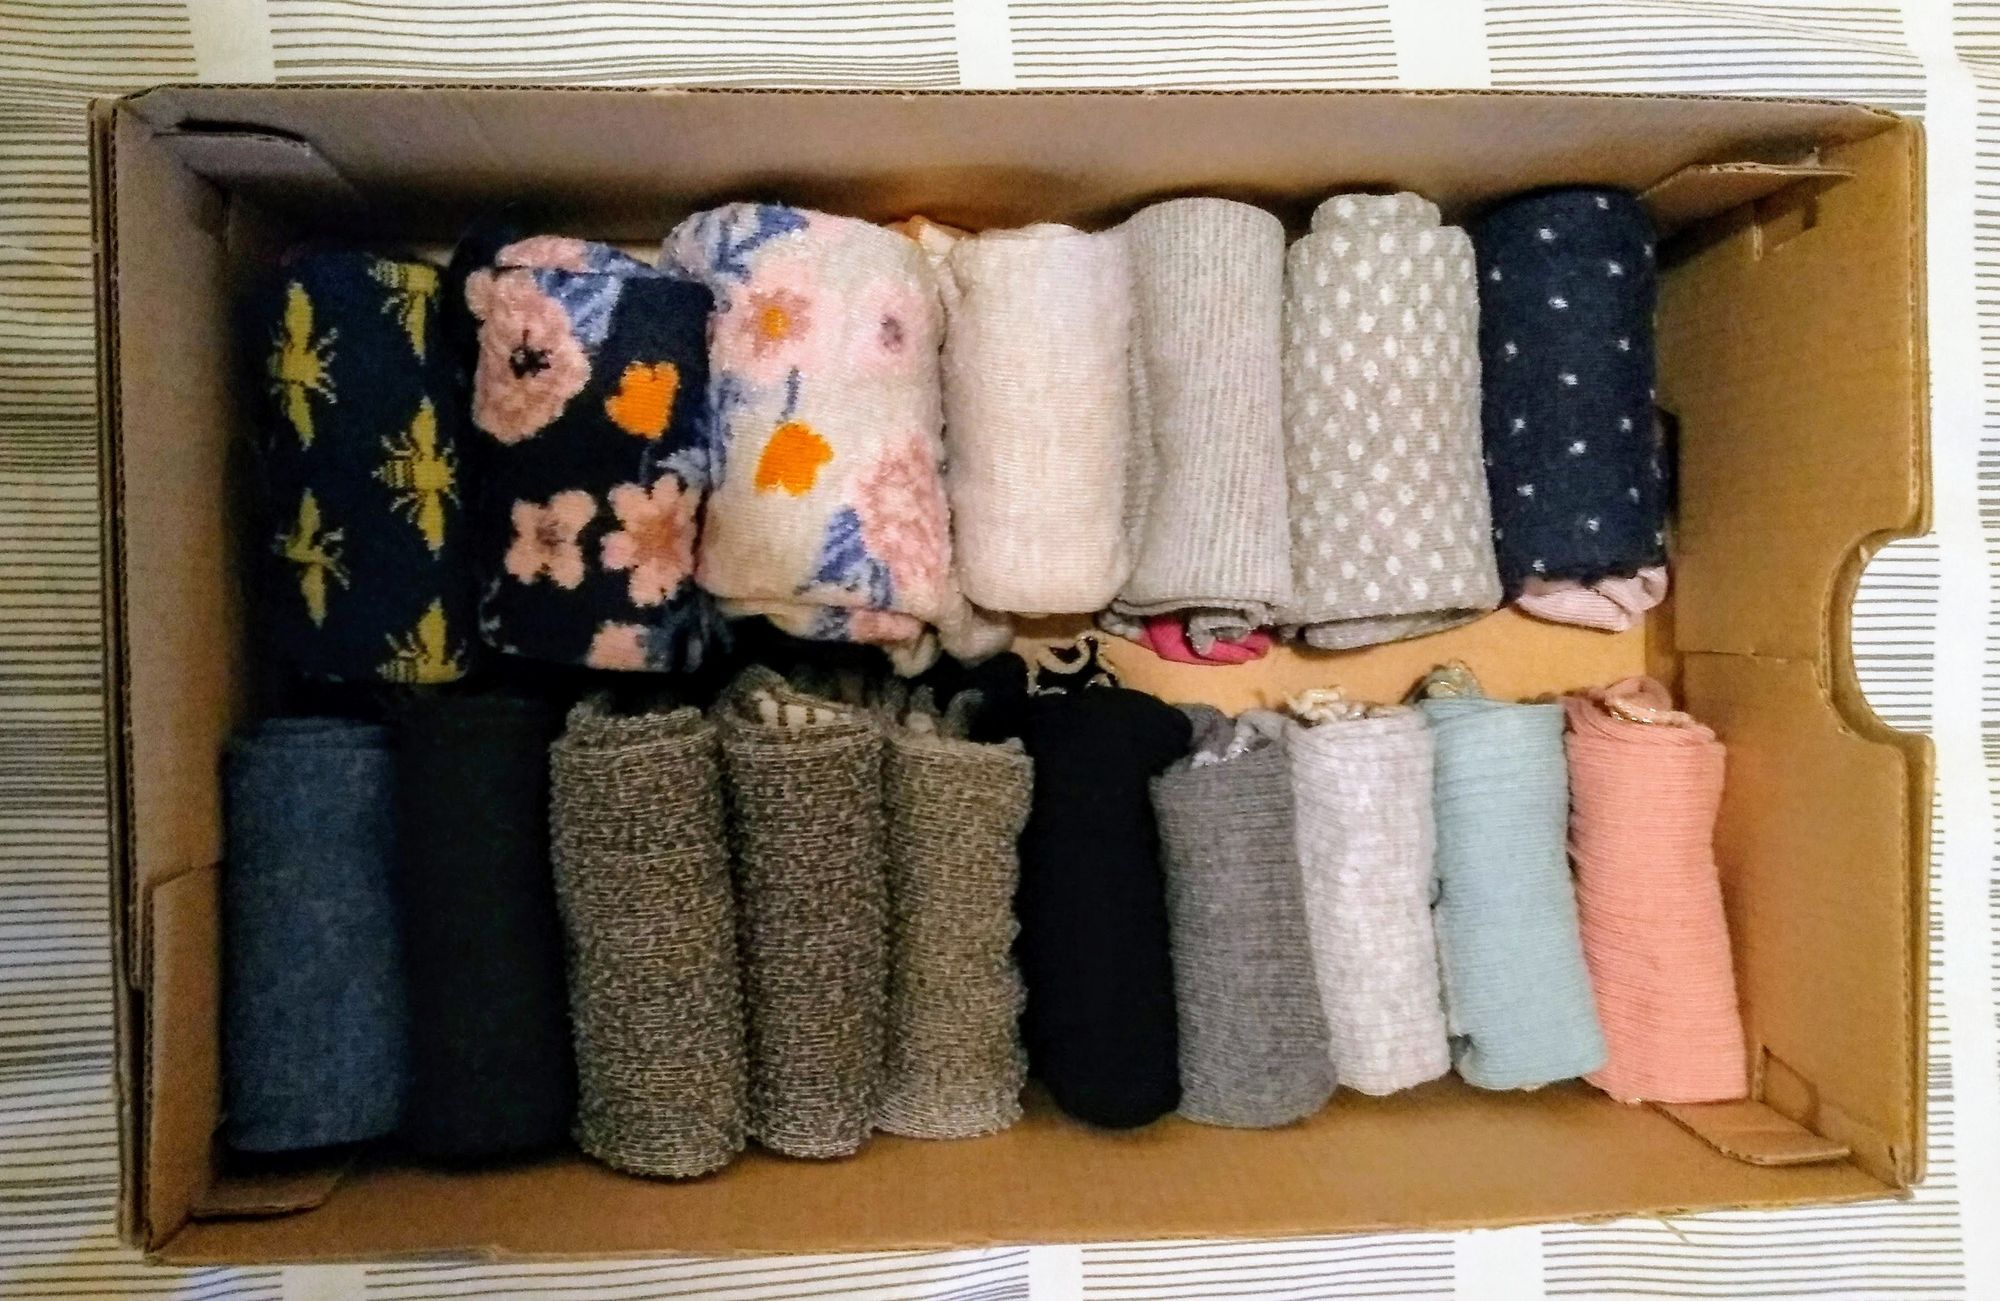 Shoebox full of folded socks